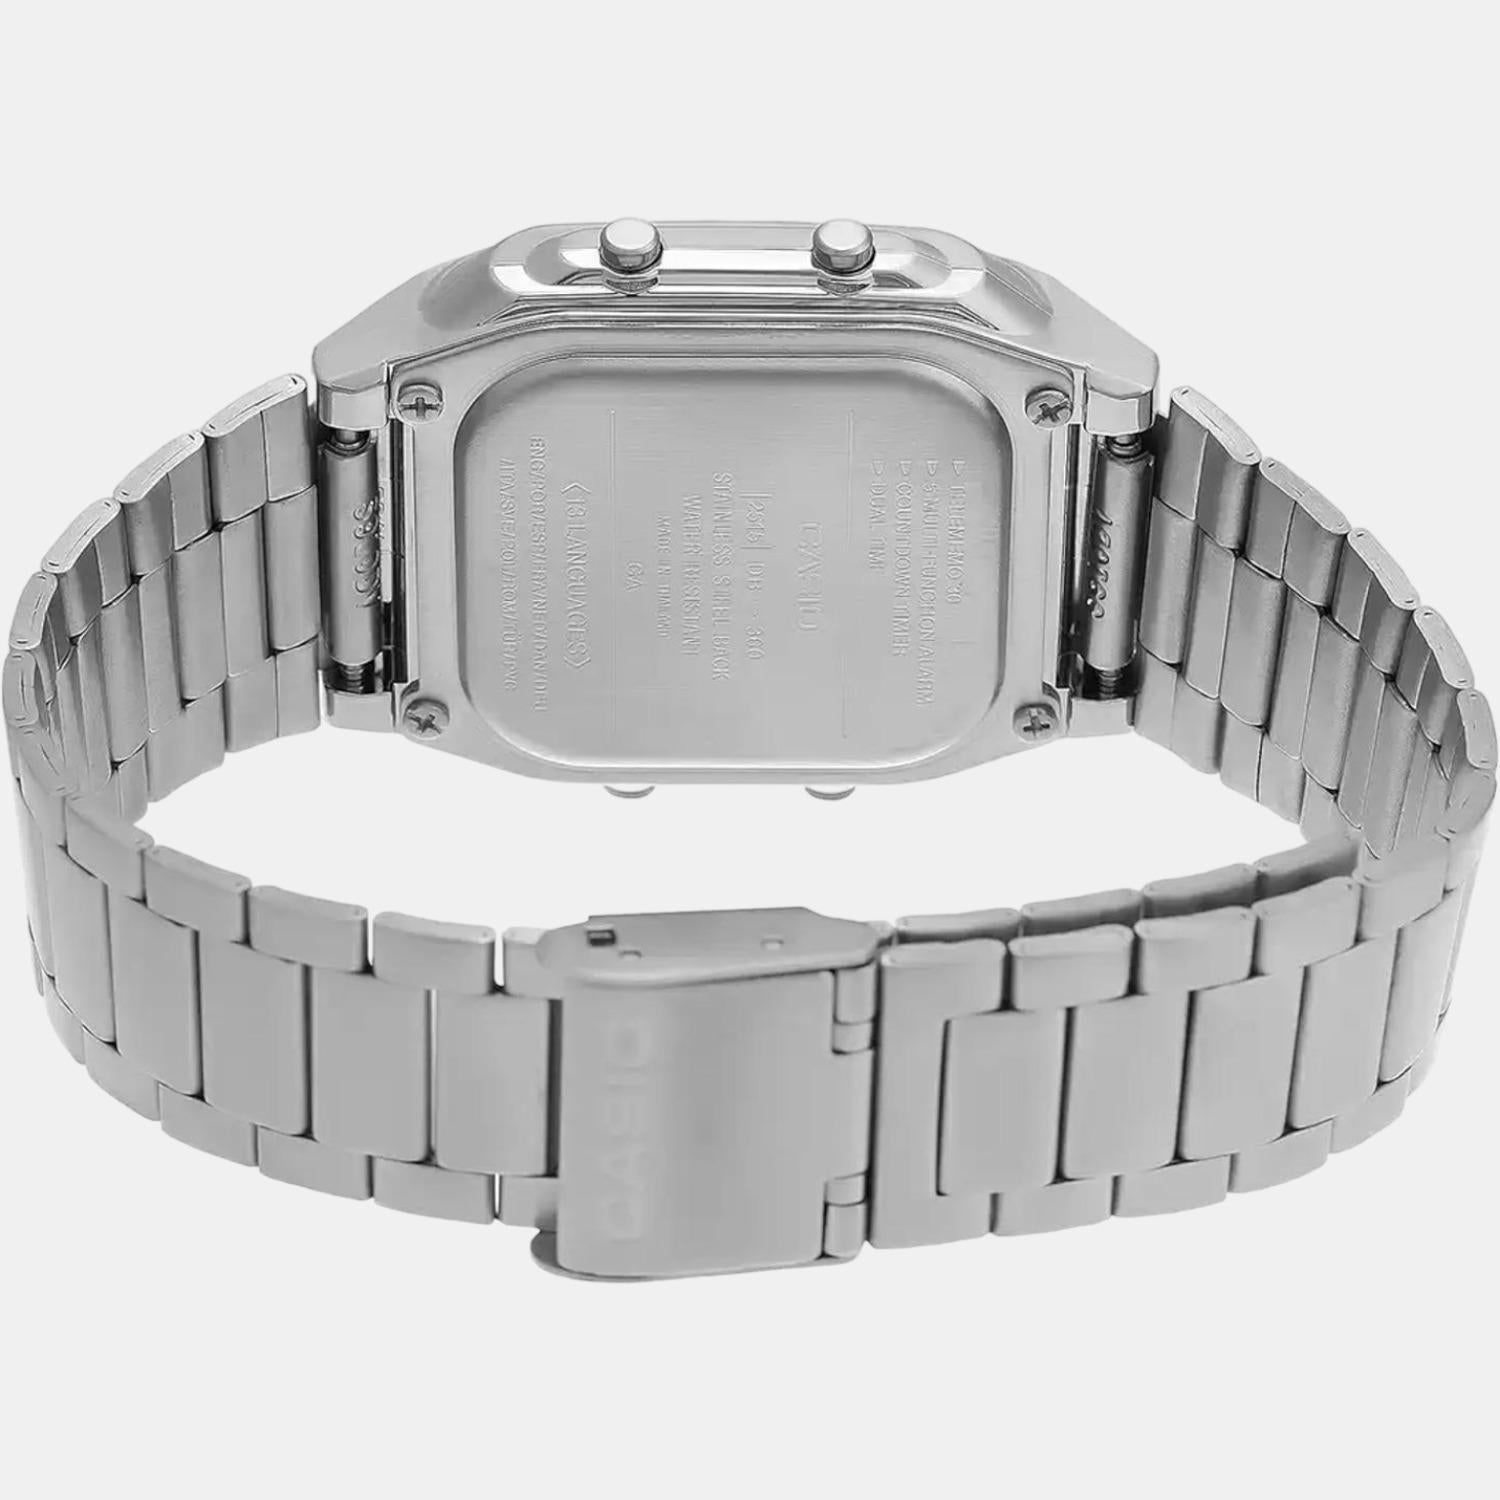 Vintage Unisex Digital Stainless Steel Watch DB27 - DB-360-1ASDF